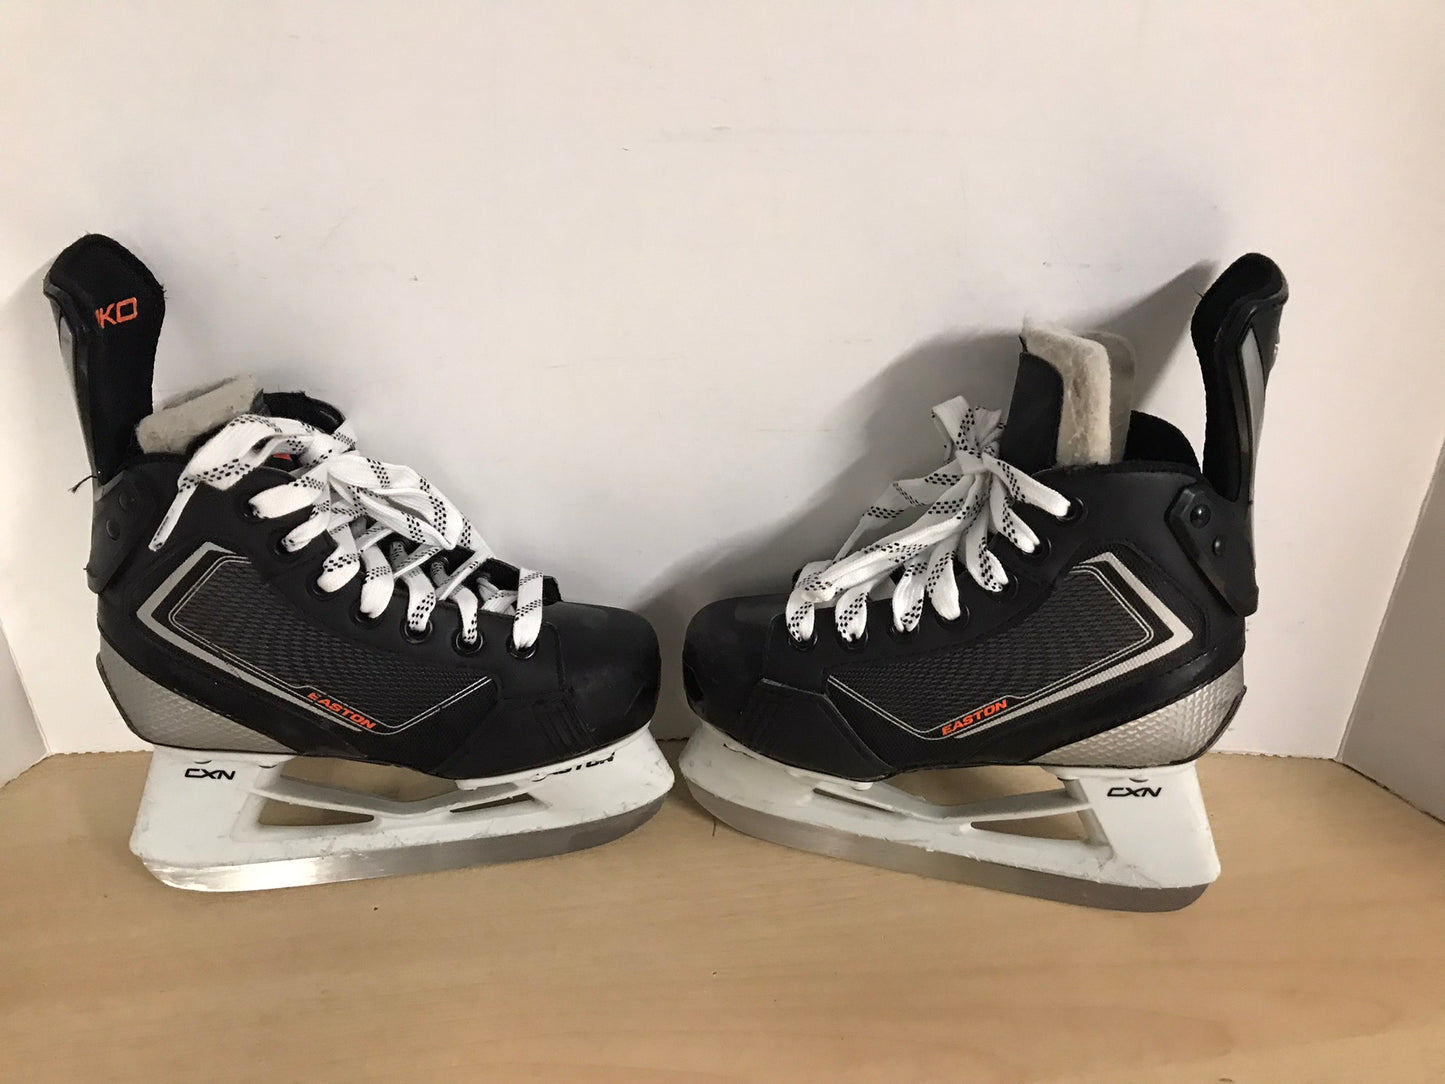 Hockey Skates Child Size 12 Shoe Size Easton Mako